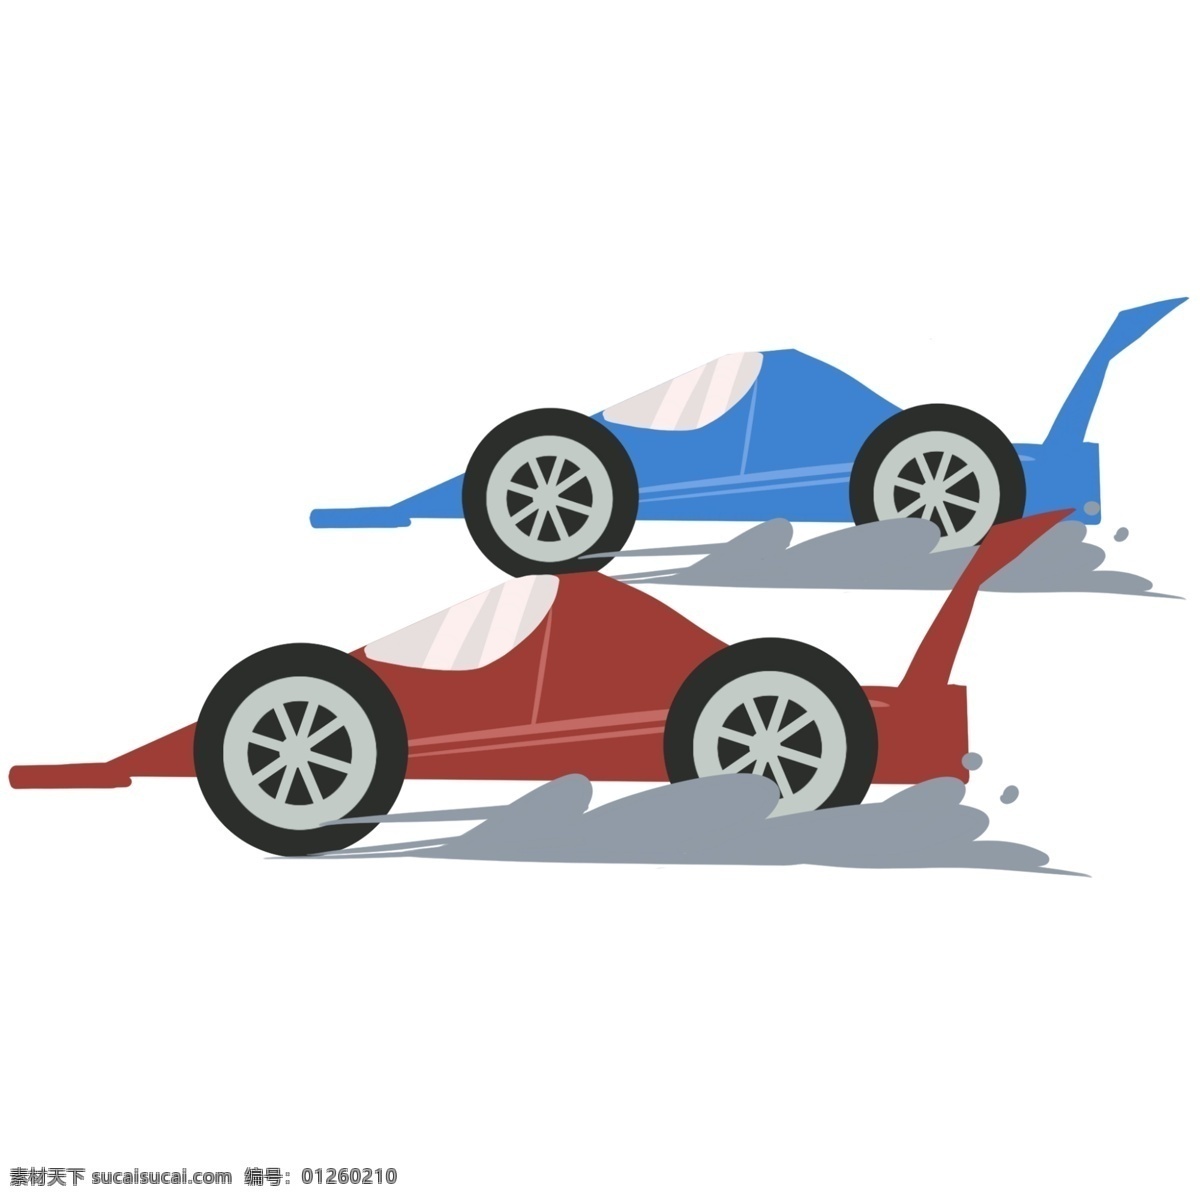 比赛 快速 行驶 赛车 插画 比赛的赛车 快速的赛车 卡通插画 赛车插画 汽车插画 红色的汽车 蓝色的汽车